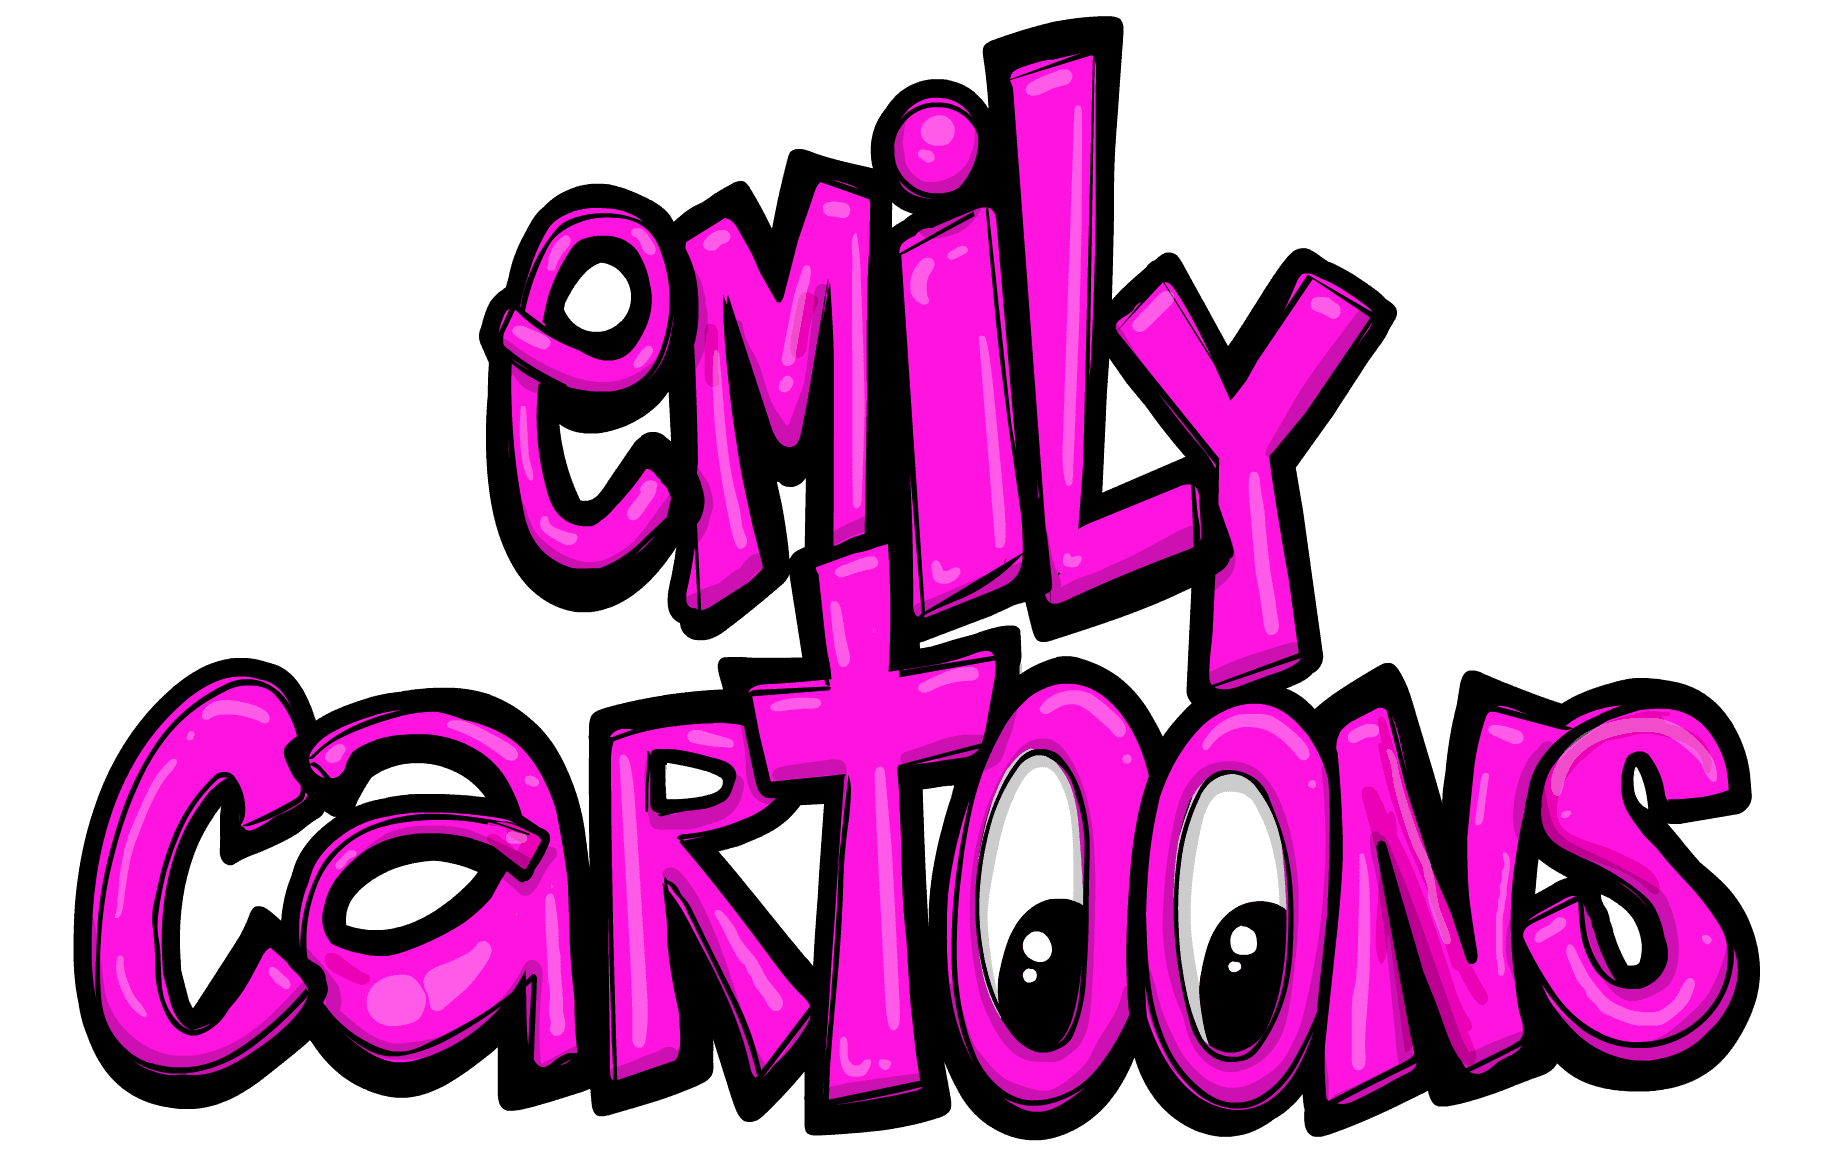 EmilyCartoonsOtherPage バナー